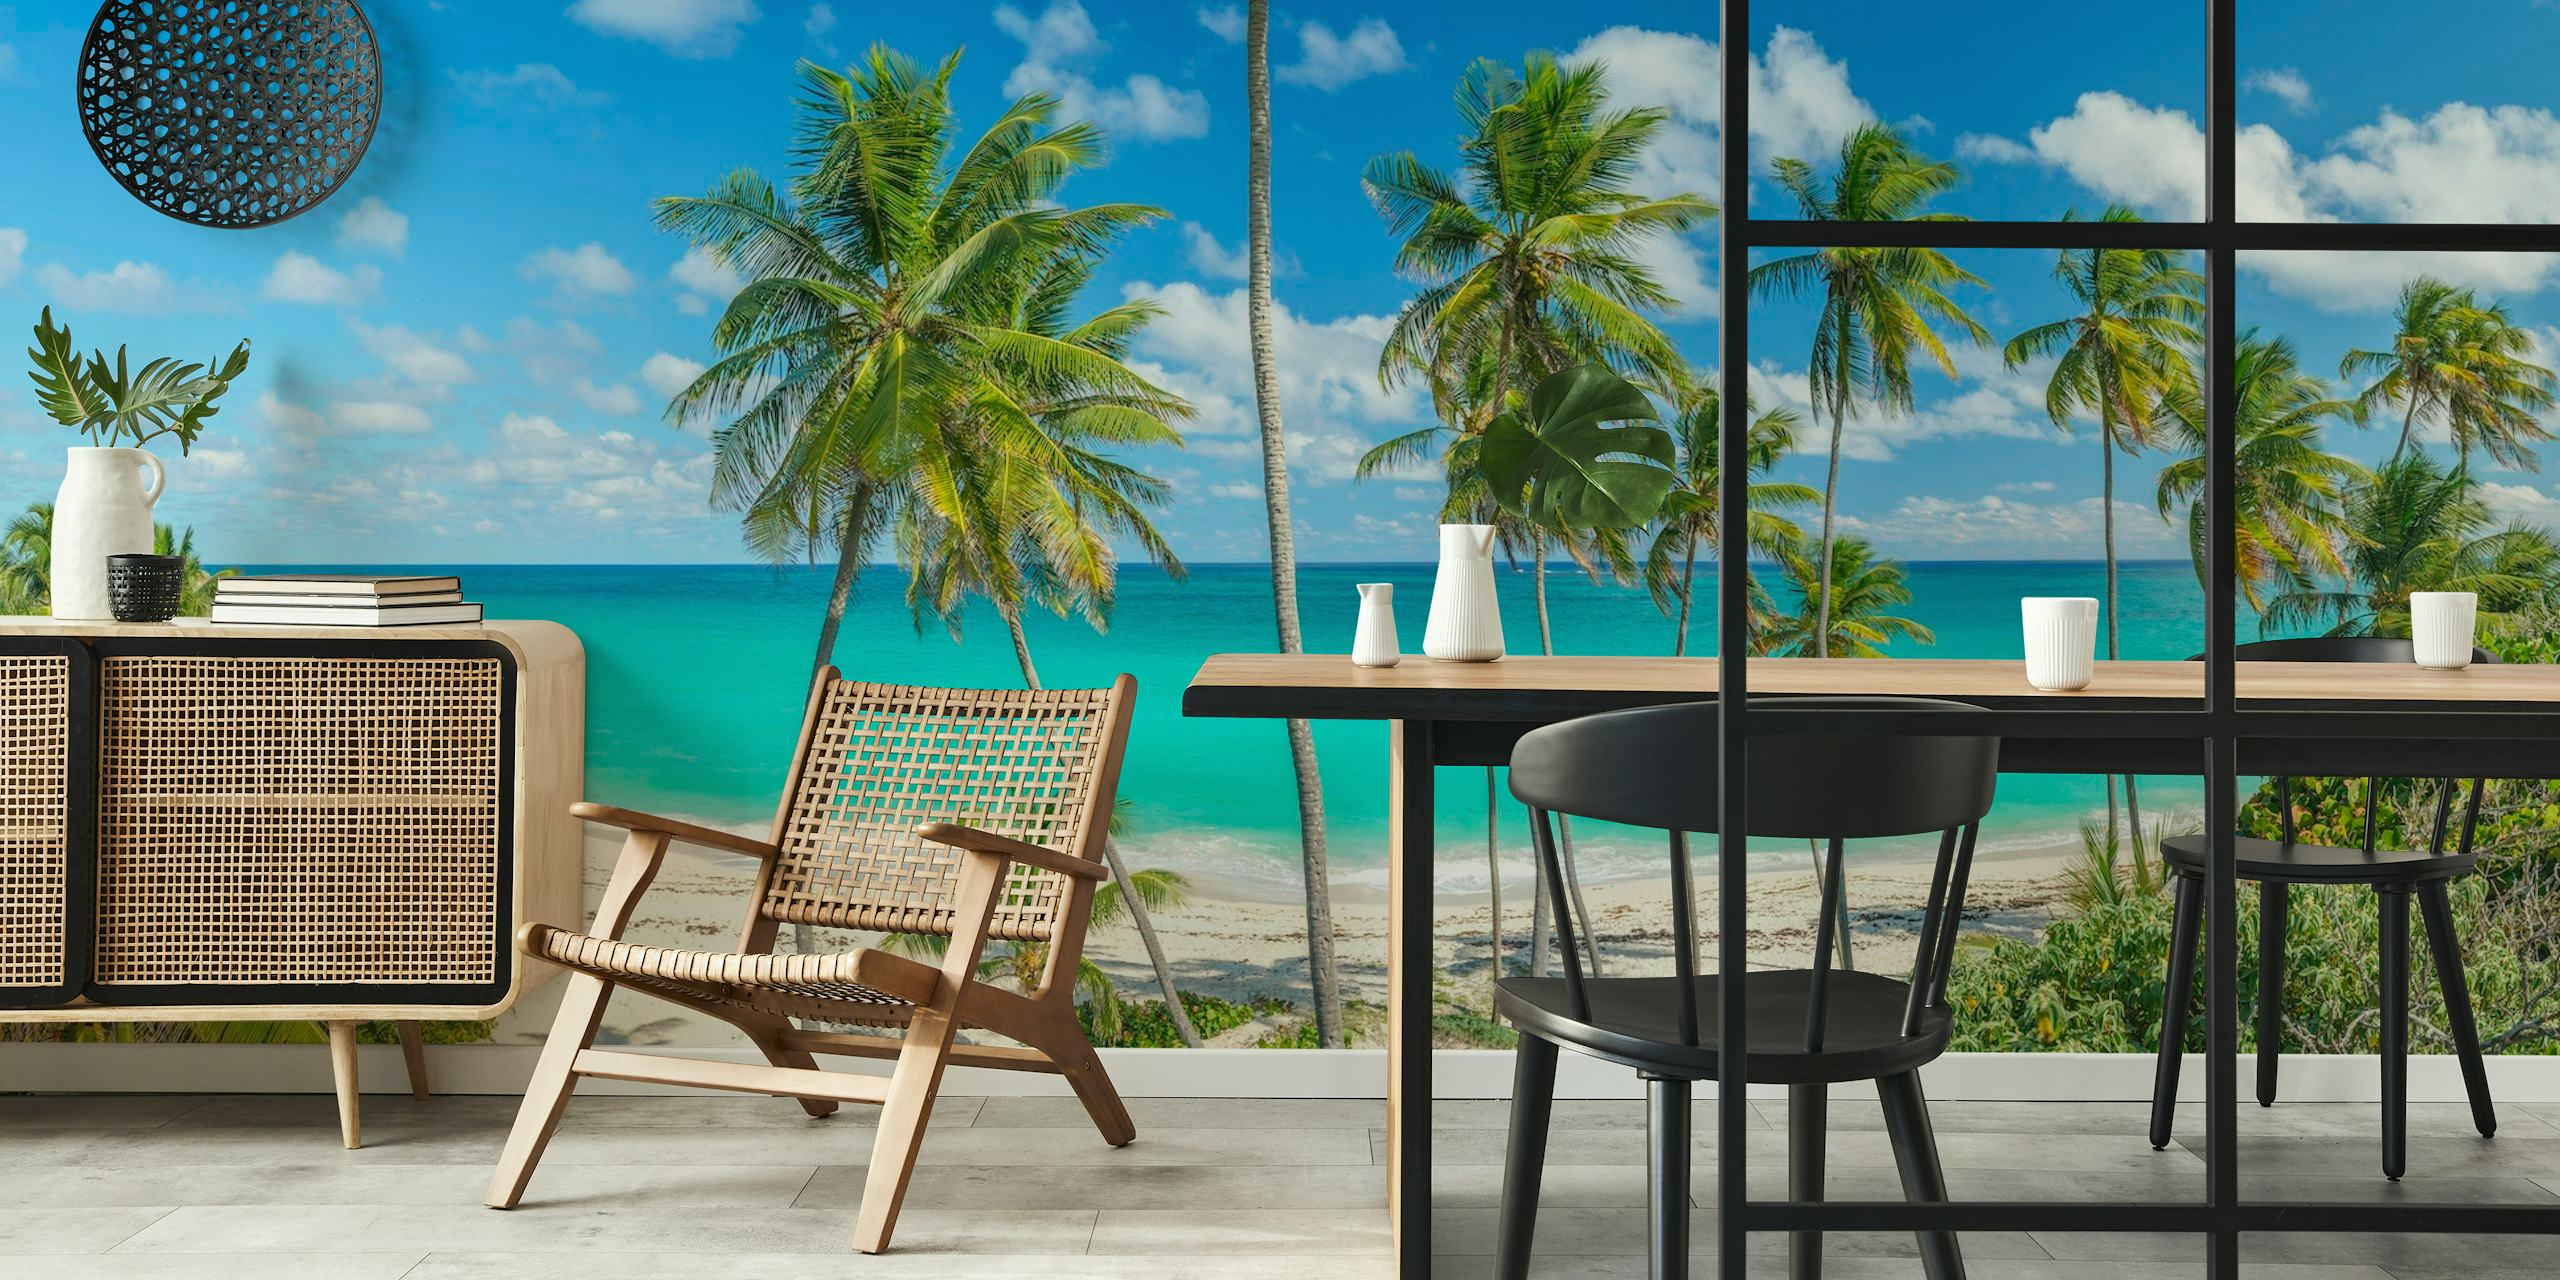 Fotomural vinílico de praia tropical com palmeiras e águas azuis cristalinas